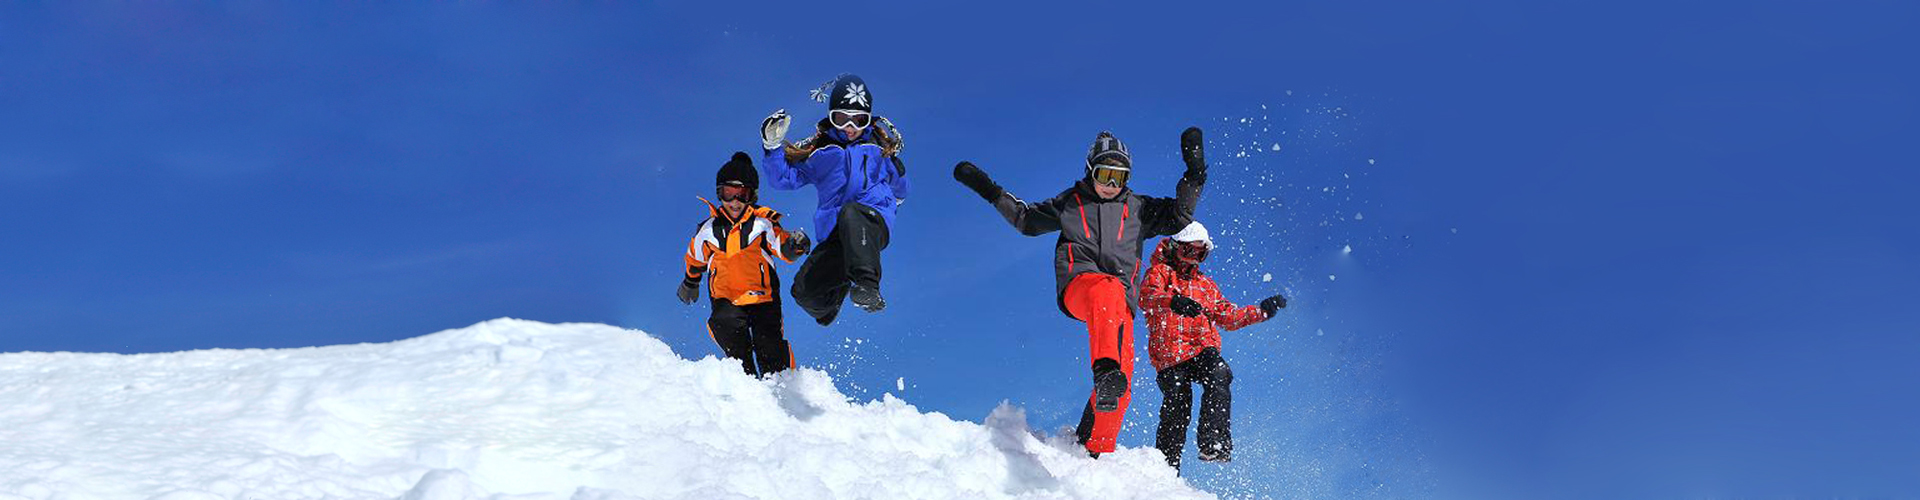 zimní aktivity - lyžařská škola, dětský park, půjčovna lyží a snowboardů, skiservis